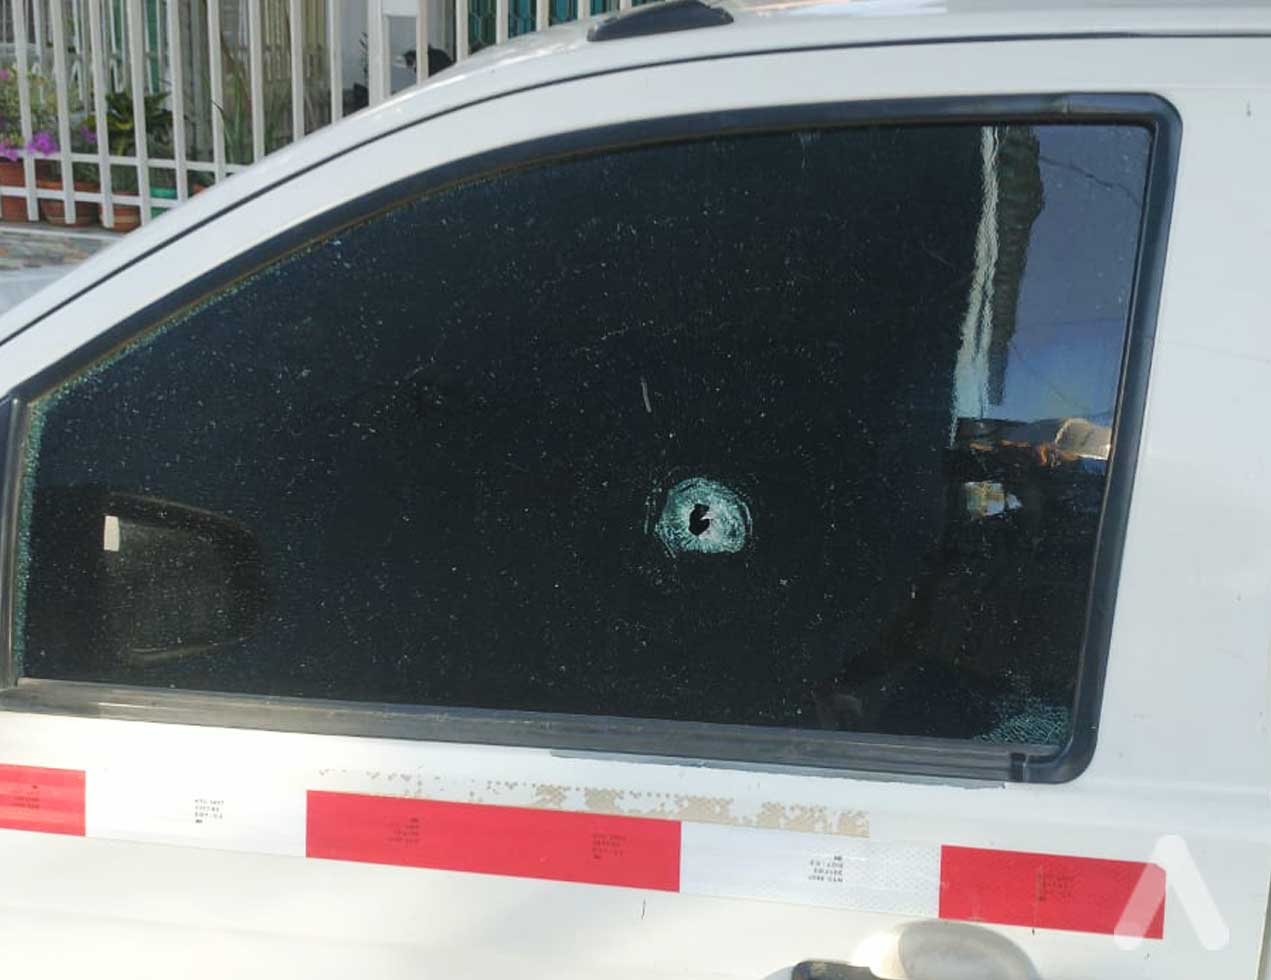 Disparan contra vehículo contratista de Air-e en el barrio Los Almendros